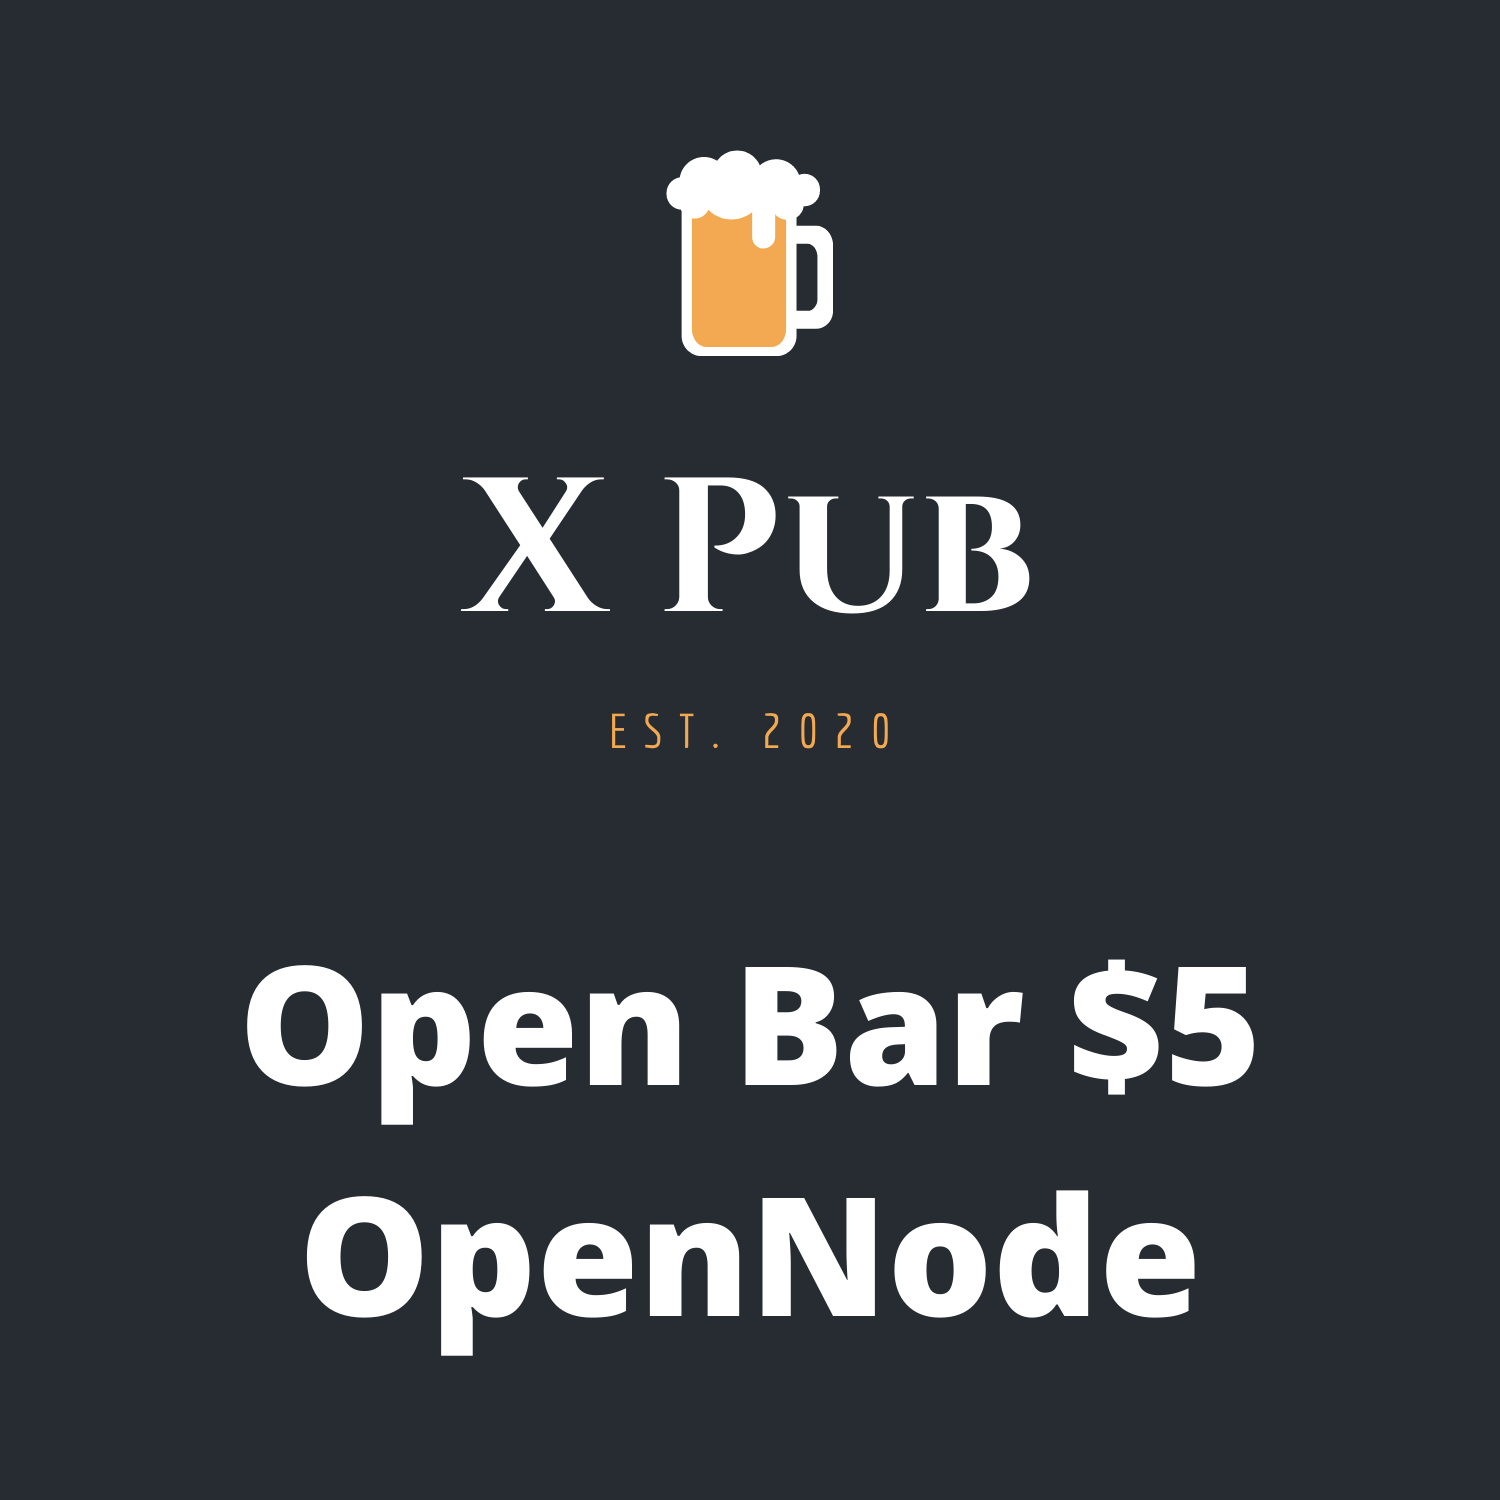 Open Bar - OpenNode - $5